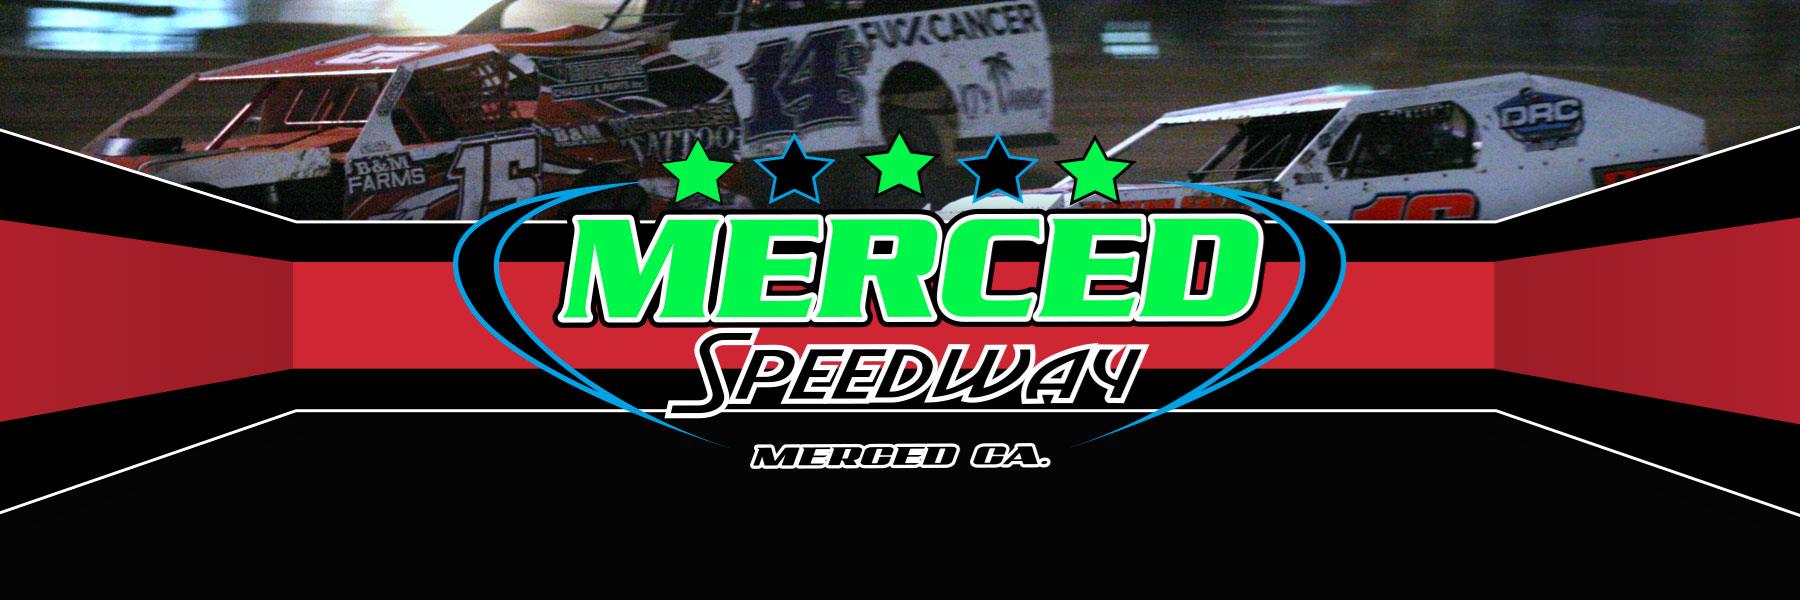 11/24/2021 - Merced Speedway